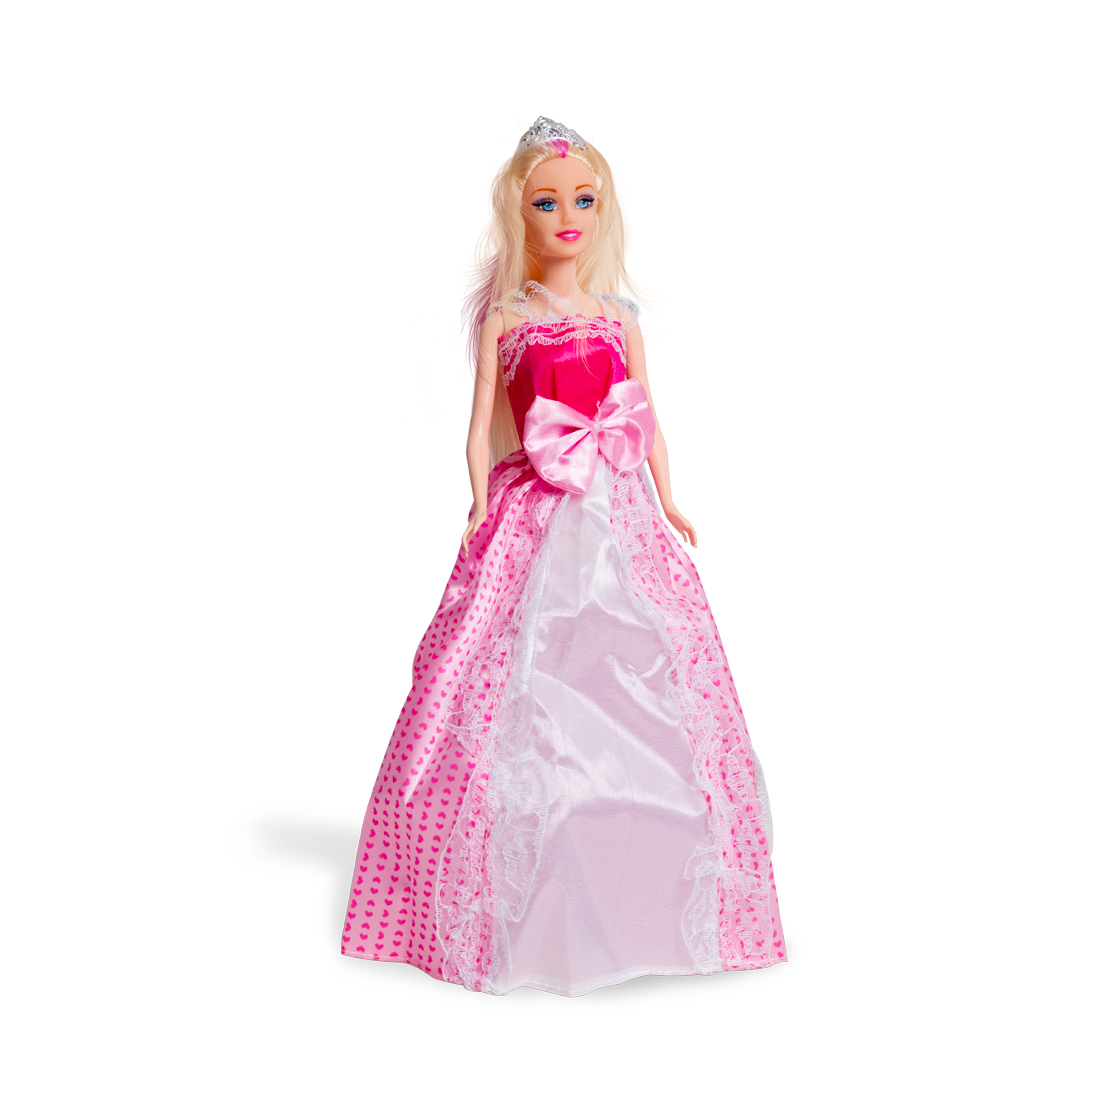 купить Кукла 29см, X Game kids, 9310, Серия Emily Сказочный бал, Подарочная упаковка, Розовое с белым платье, Пластик, Цветная русифицированная коробка в Алматы